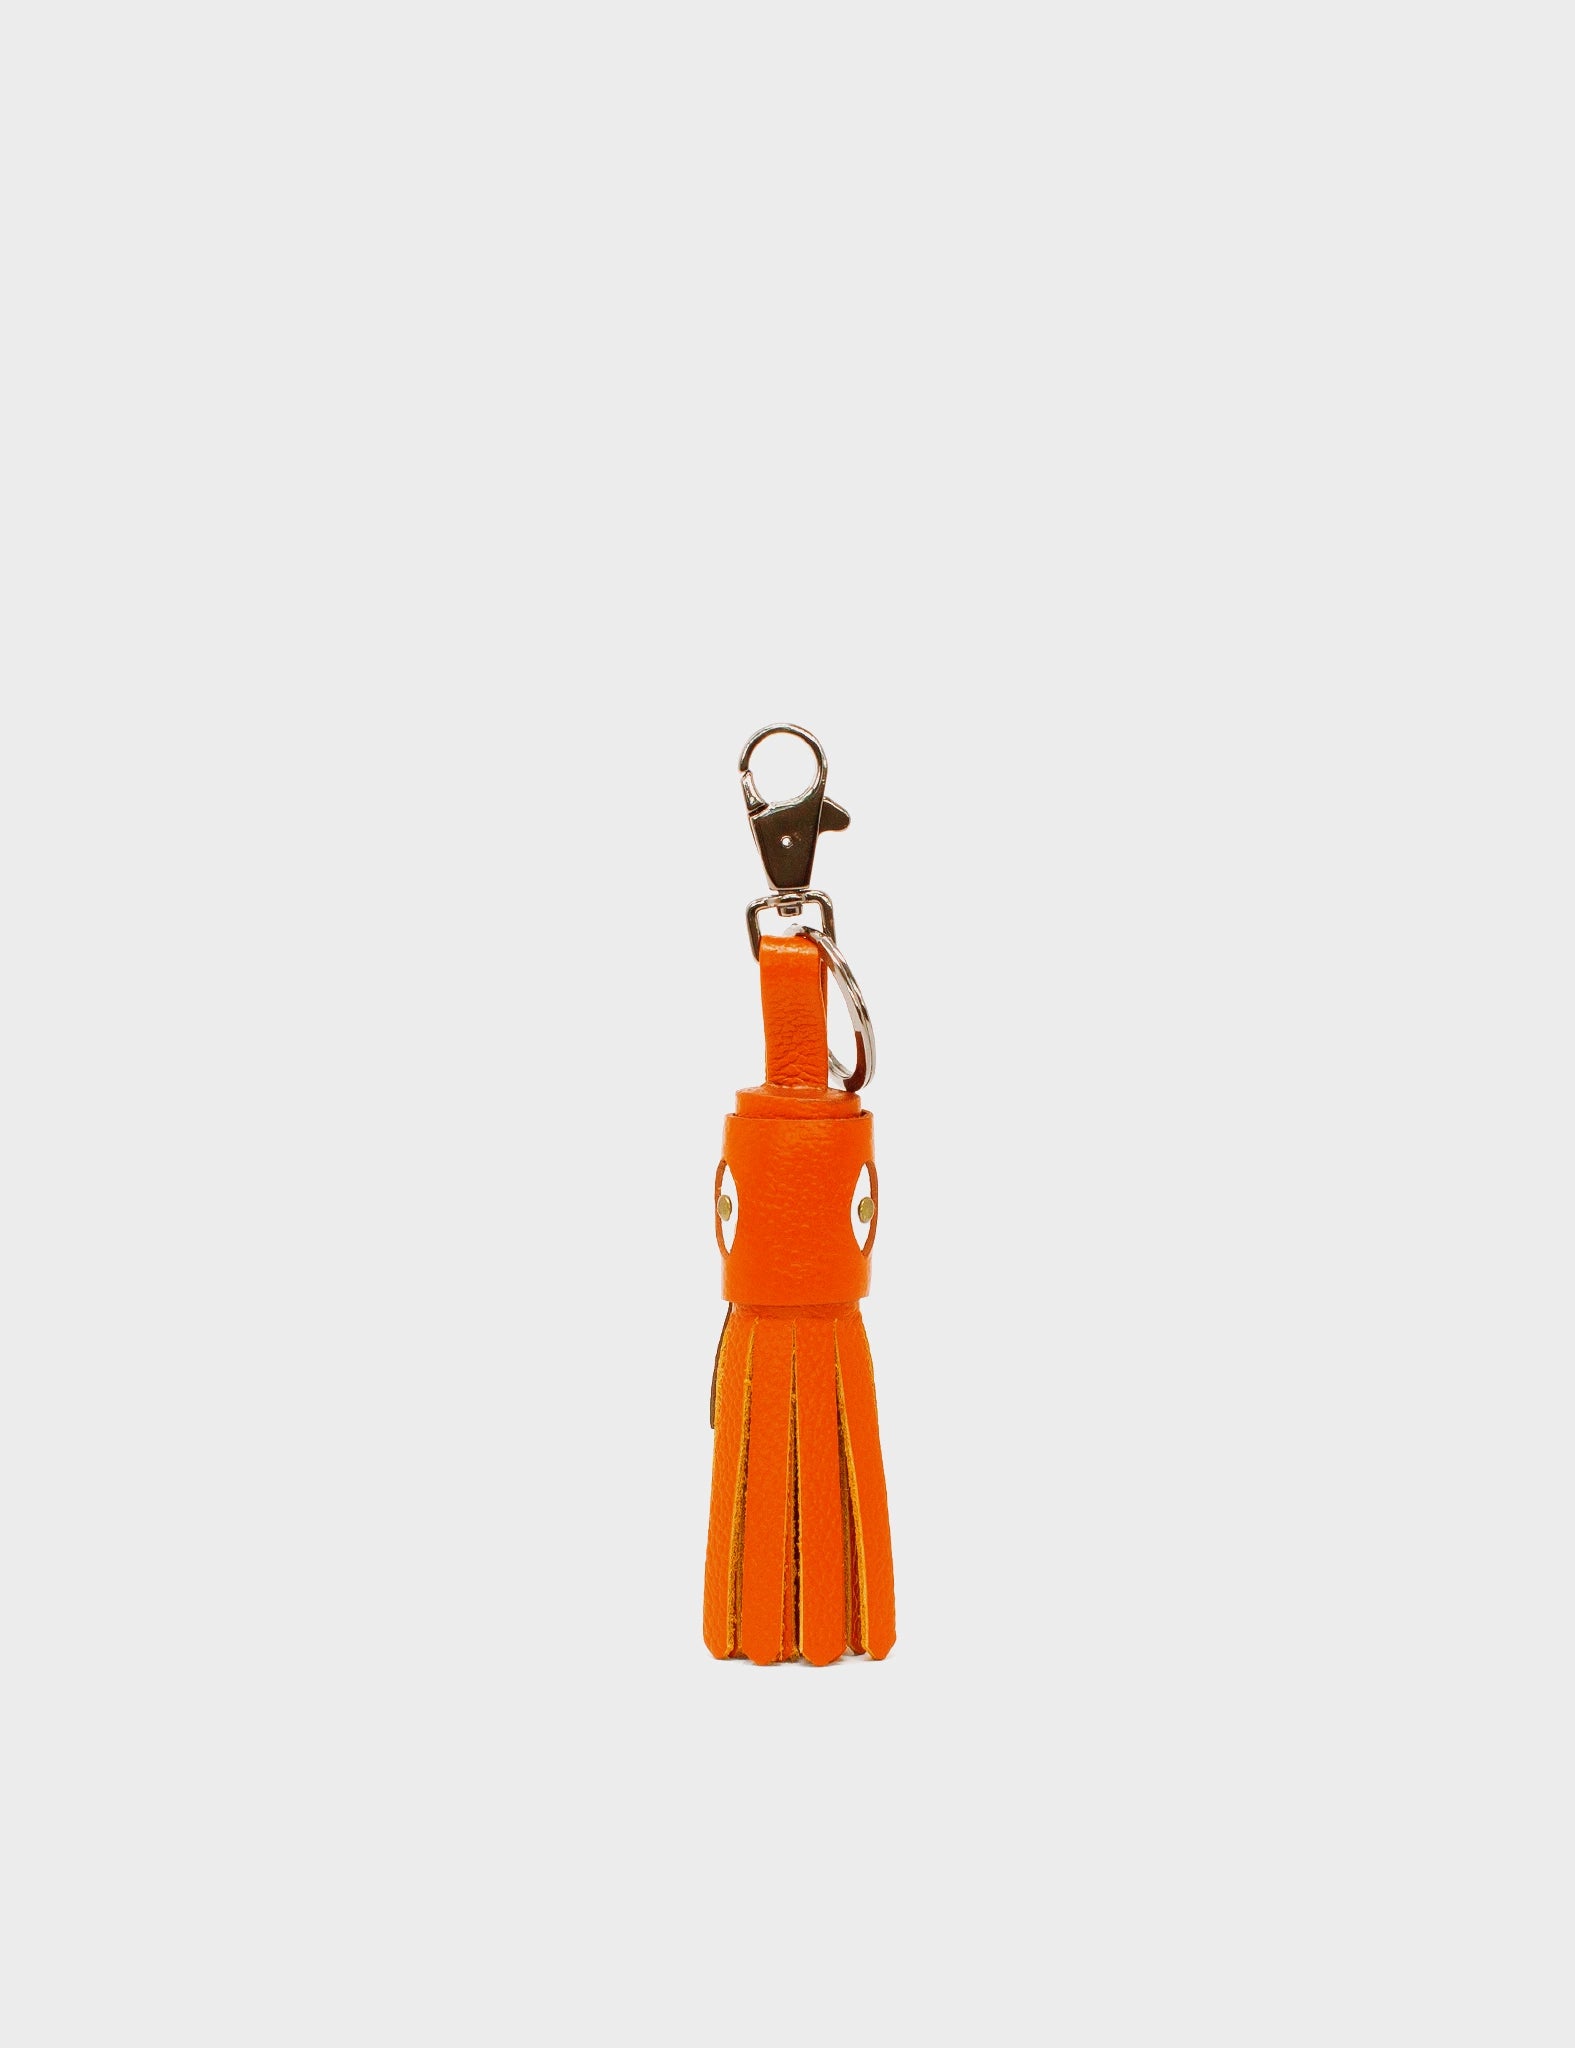 Calamari Charm - Neon Orange Leather Keychain